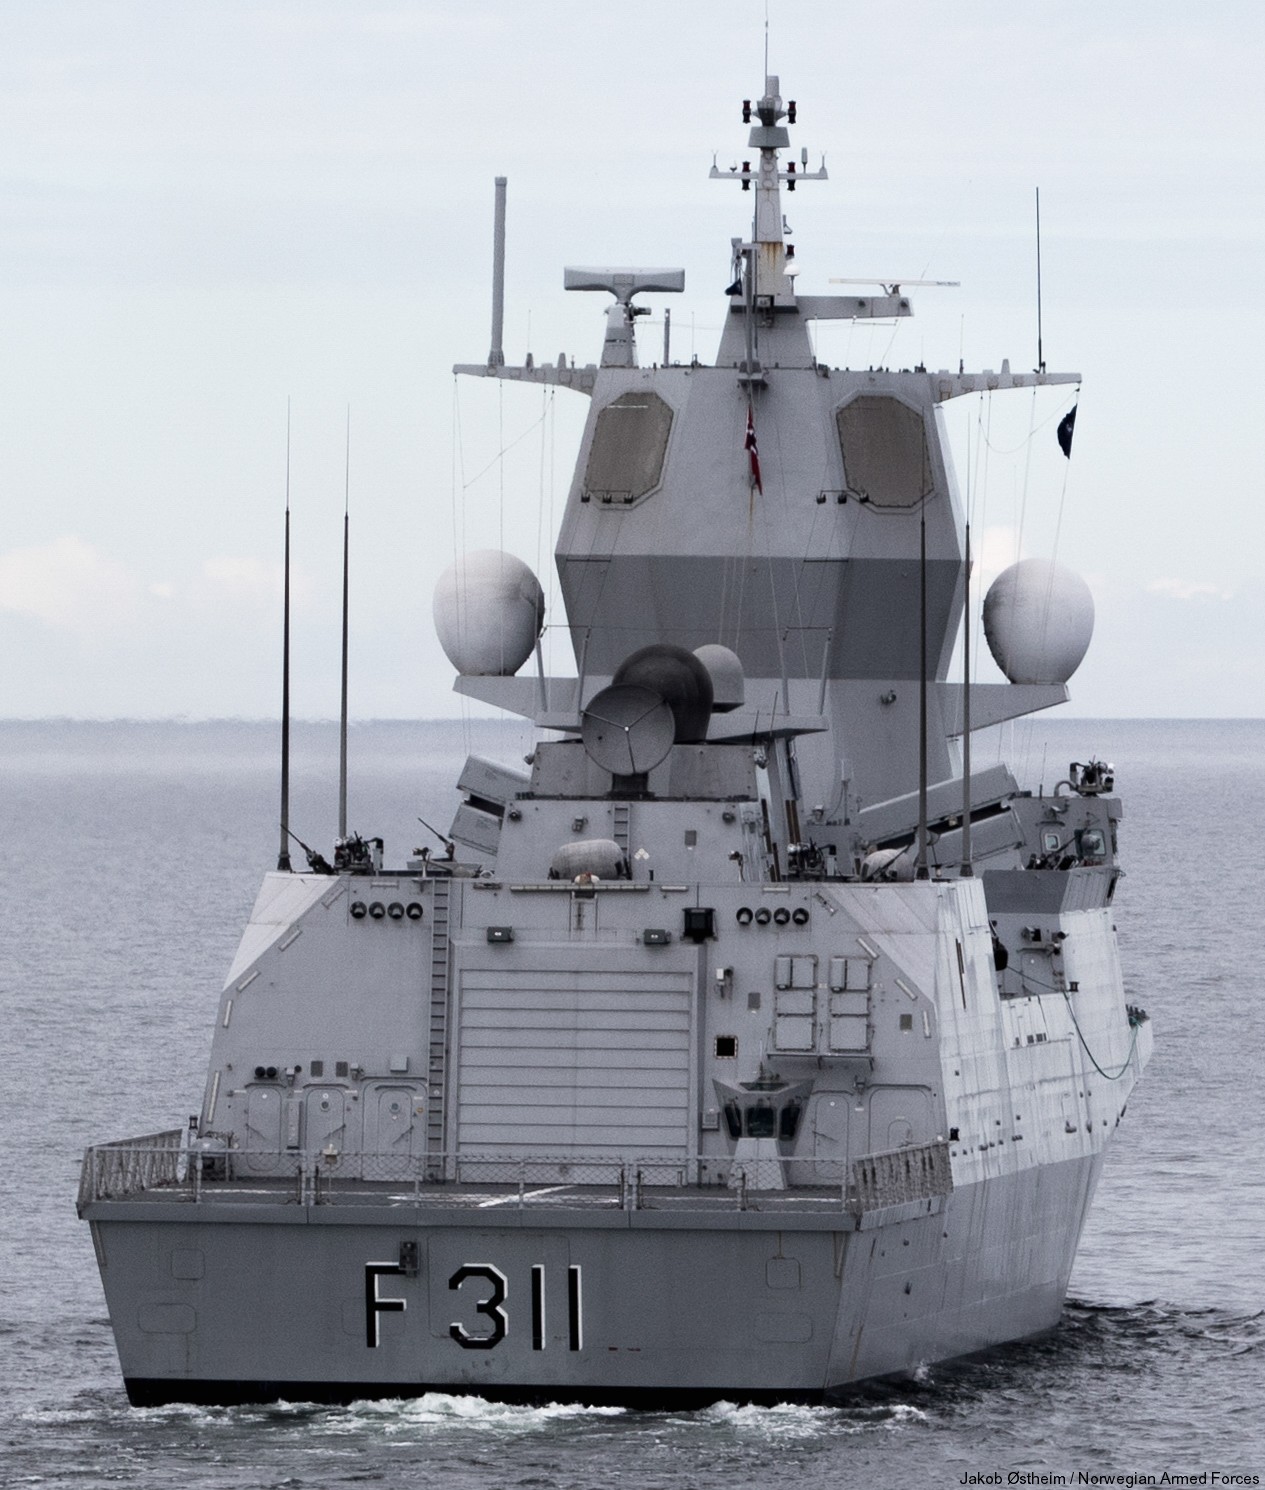 f-311 hnoms roald amundsen knm nansen class frigate royal norwegian navy sjoforsvaret 36